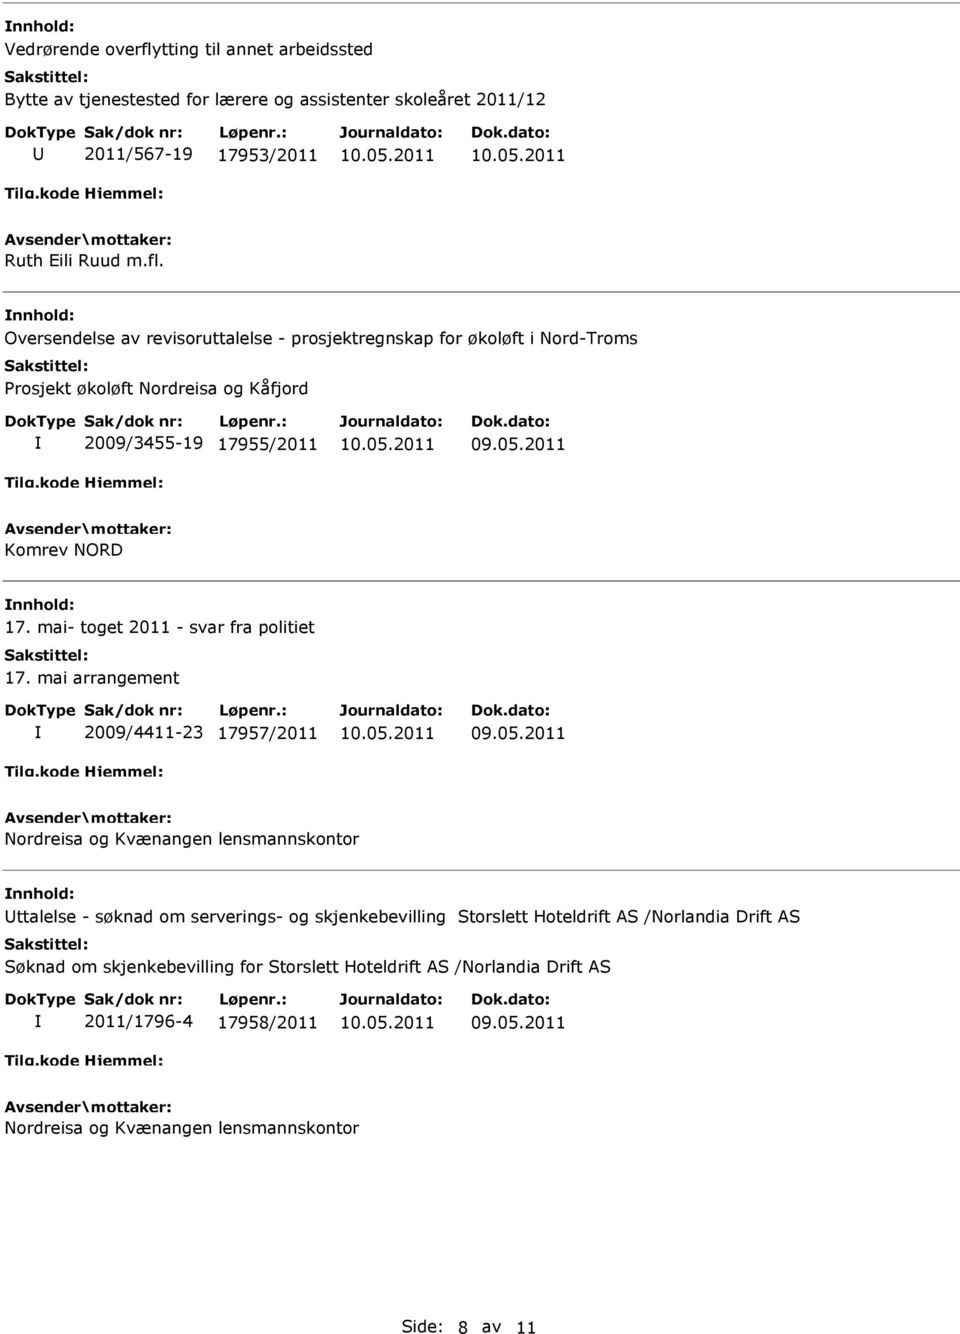 Oversendelse av revisoruttalelse - prosjektregnskap for økoløft i Nord-Troms Prosjekt økoløft Nordreisa og Kåfjord 2009/3455-19 17955/2011 Komrev NORD 17.